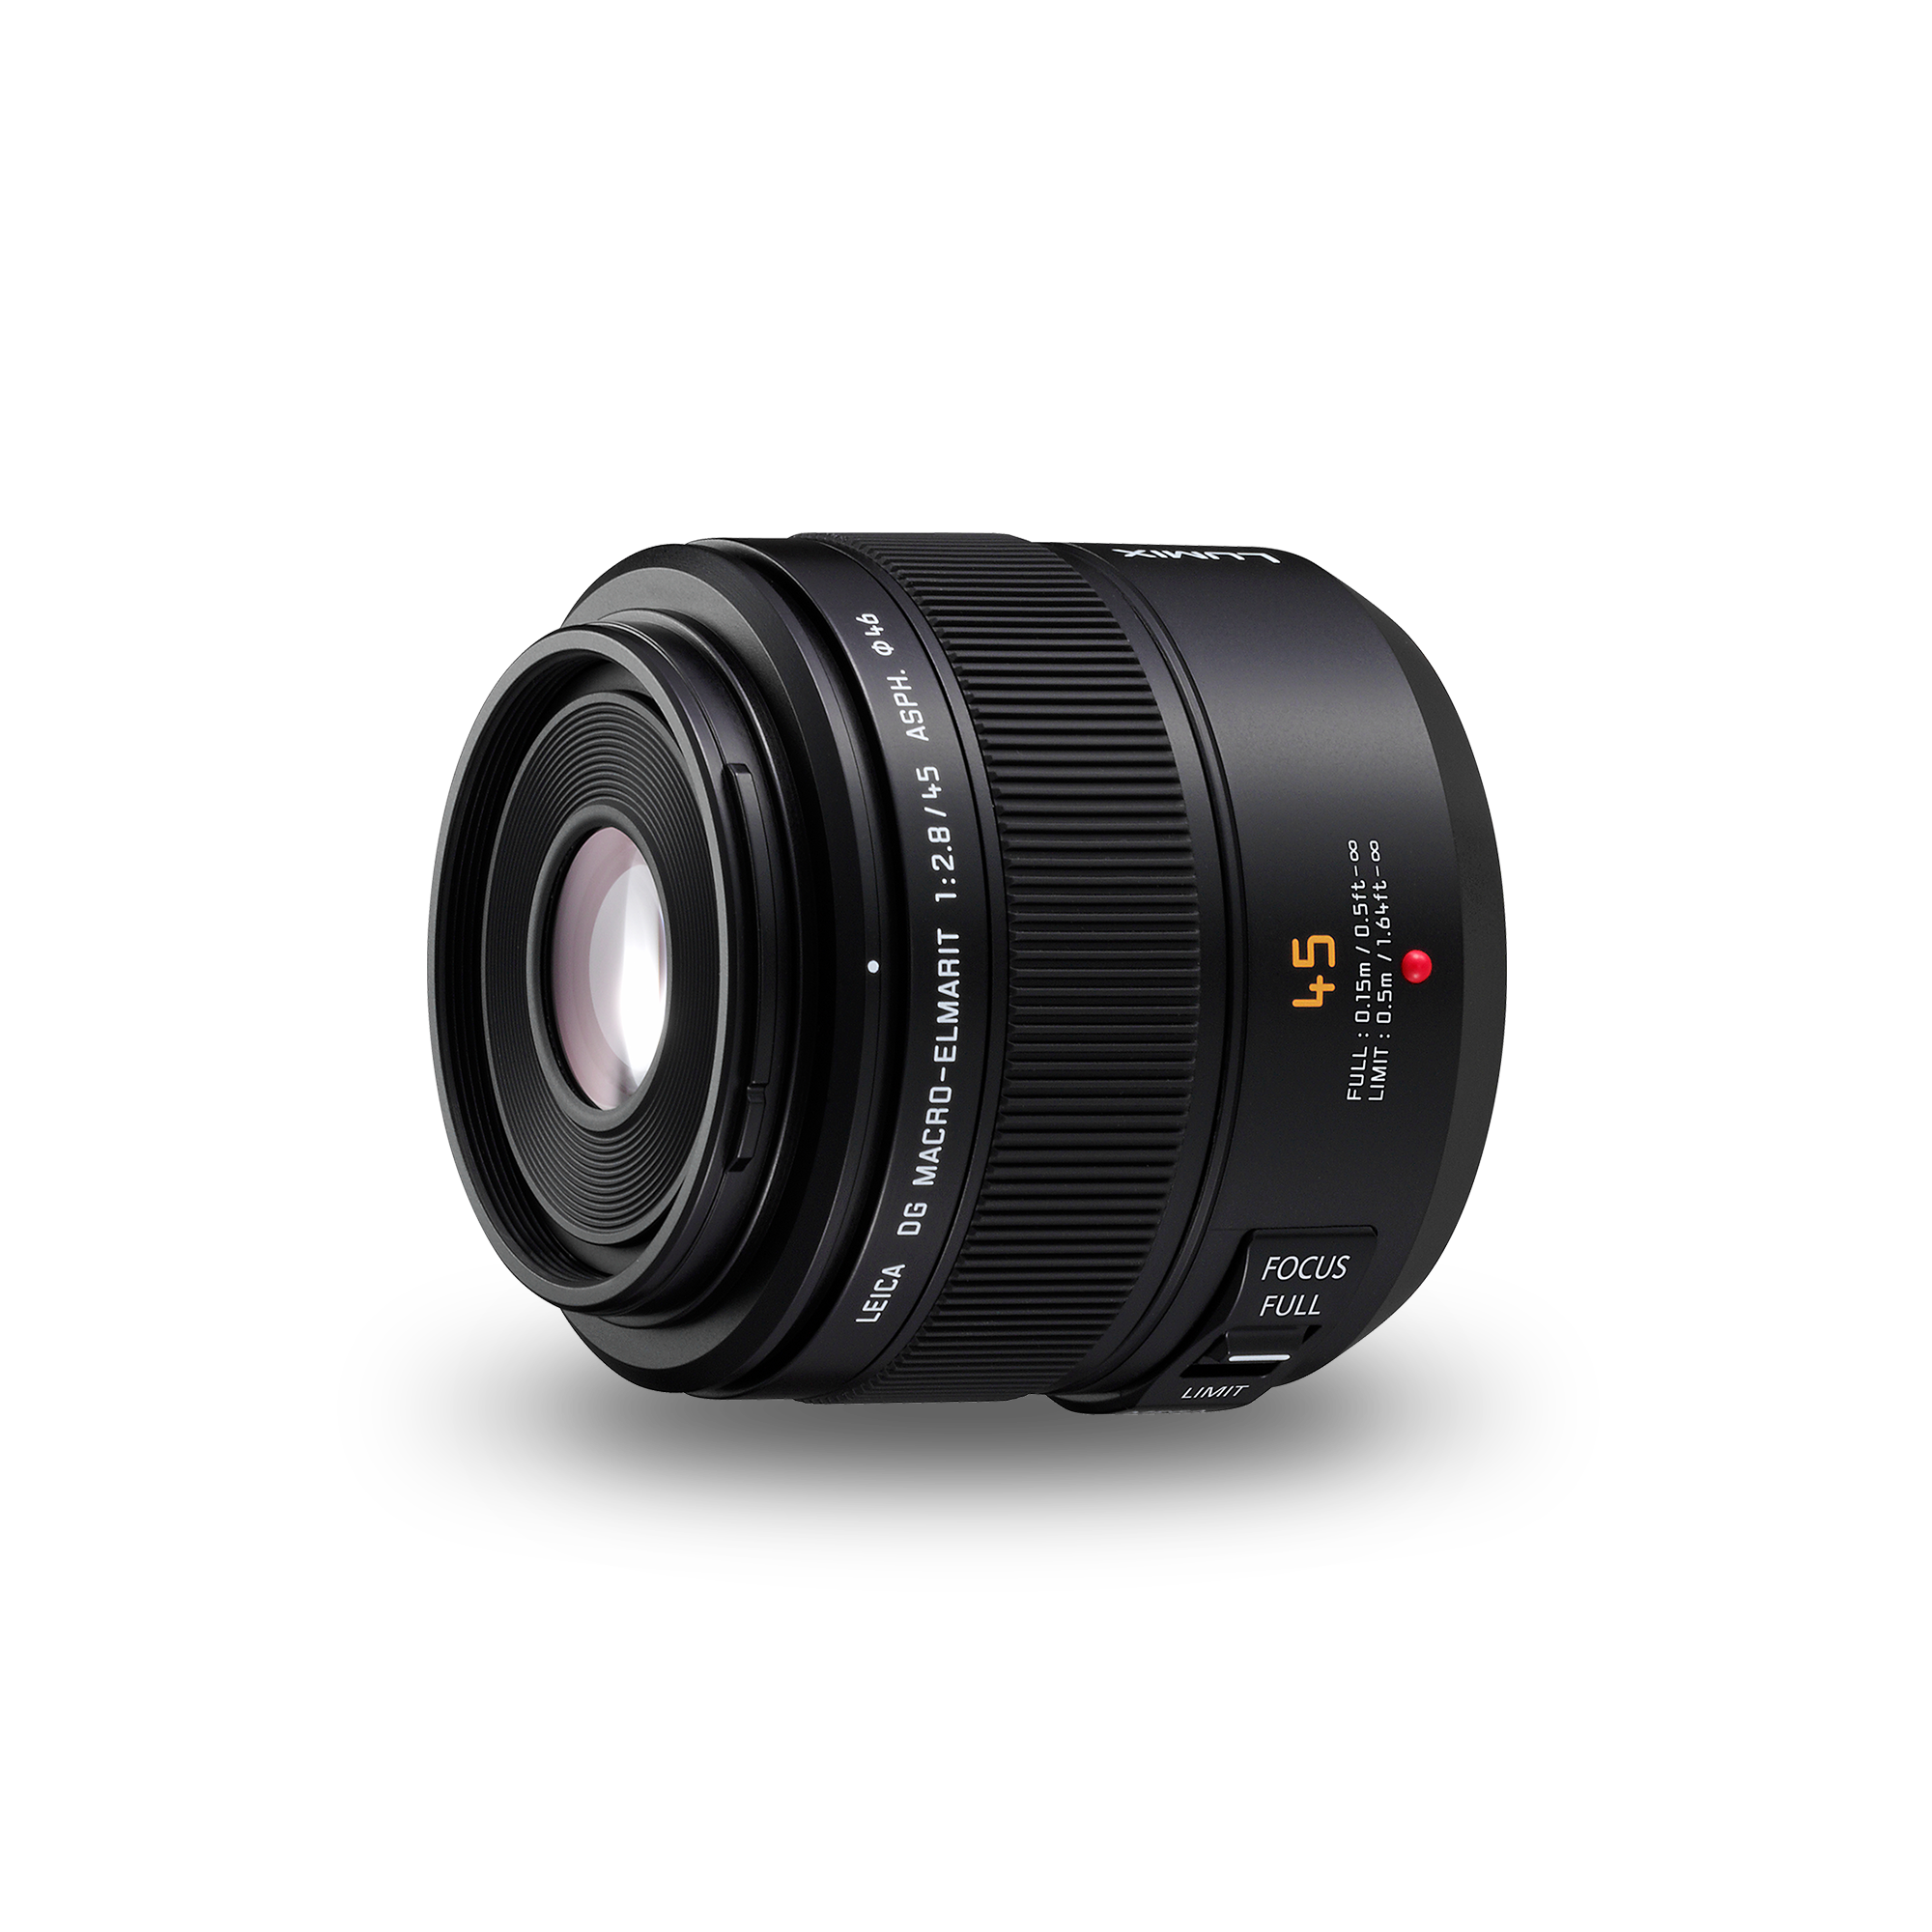 Lenses H-ES045 - Panasonic Middle East